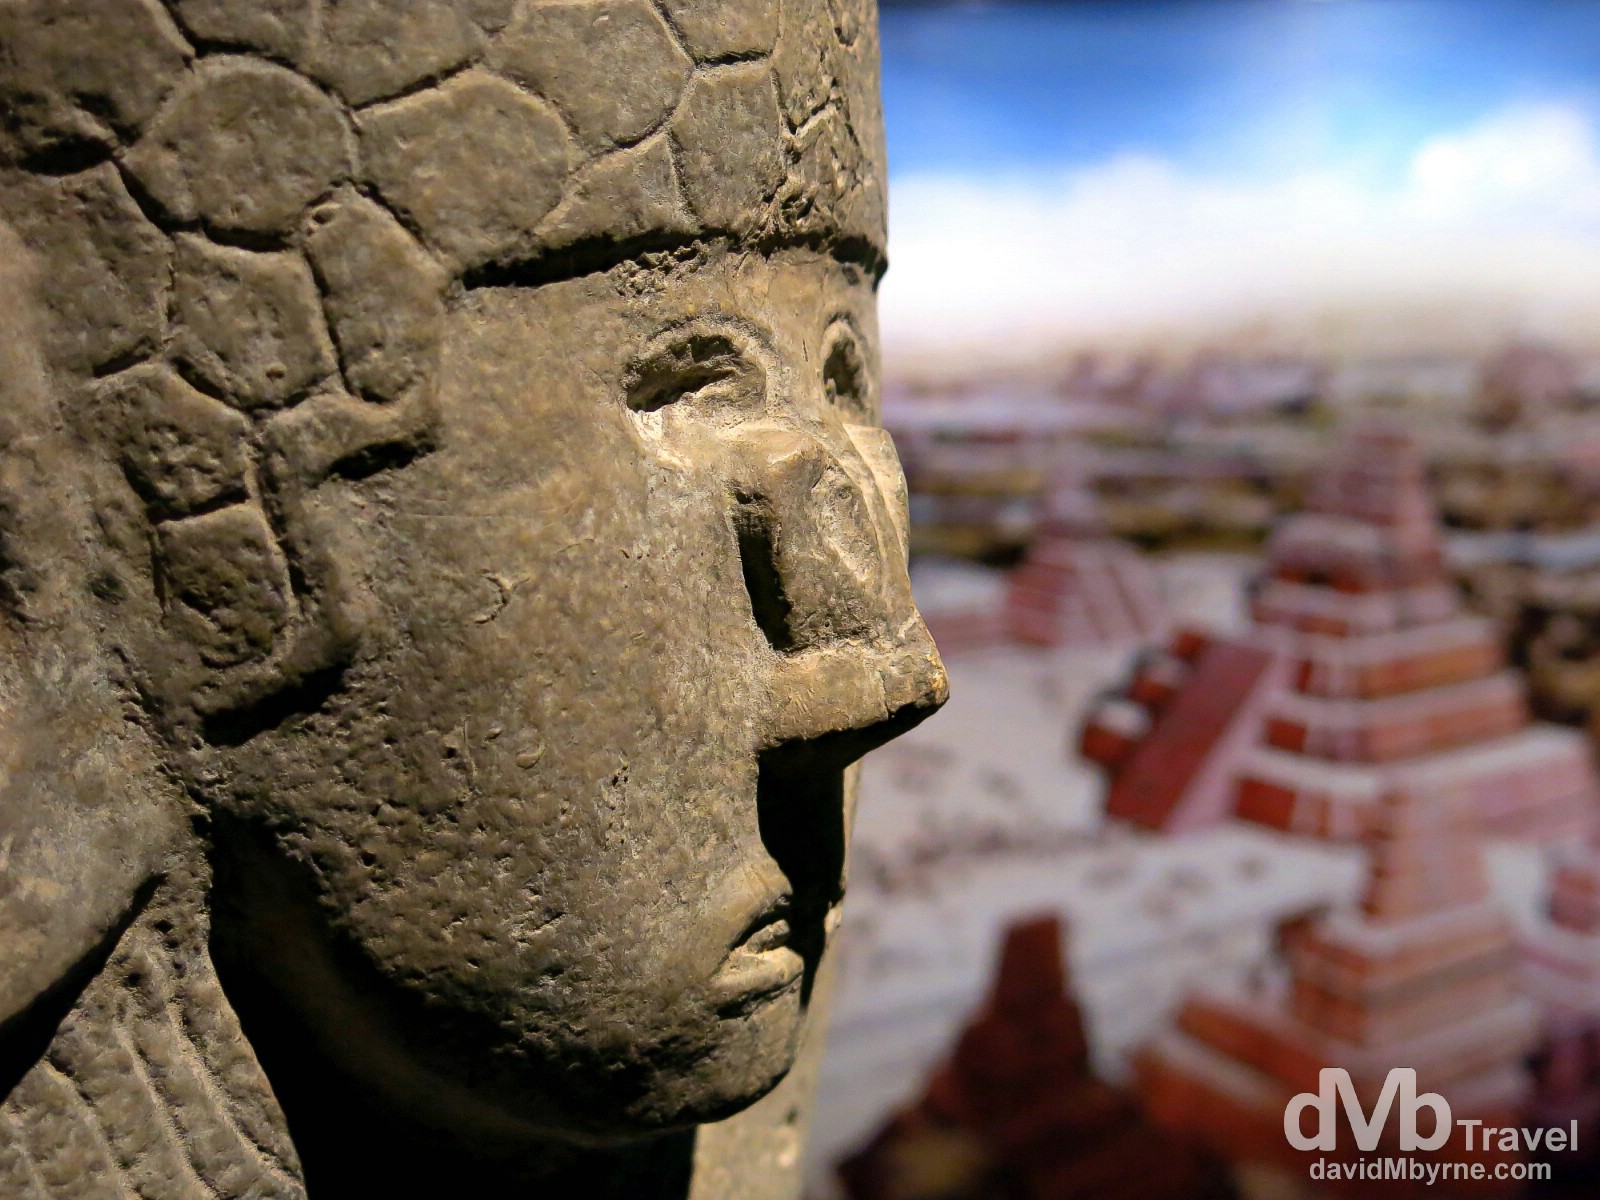 Museo de la Cultra Maya (Mayan Cultural Museum), Chetumal, Yucatan, Mexico. May 9th 2013.